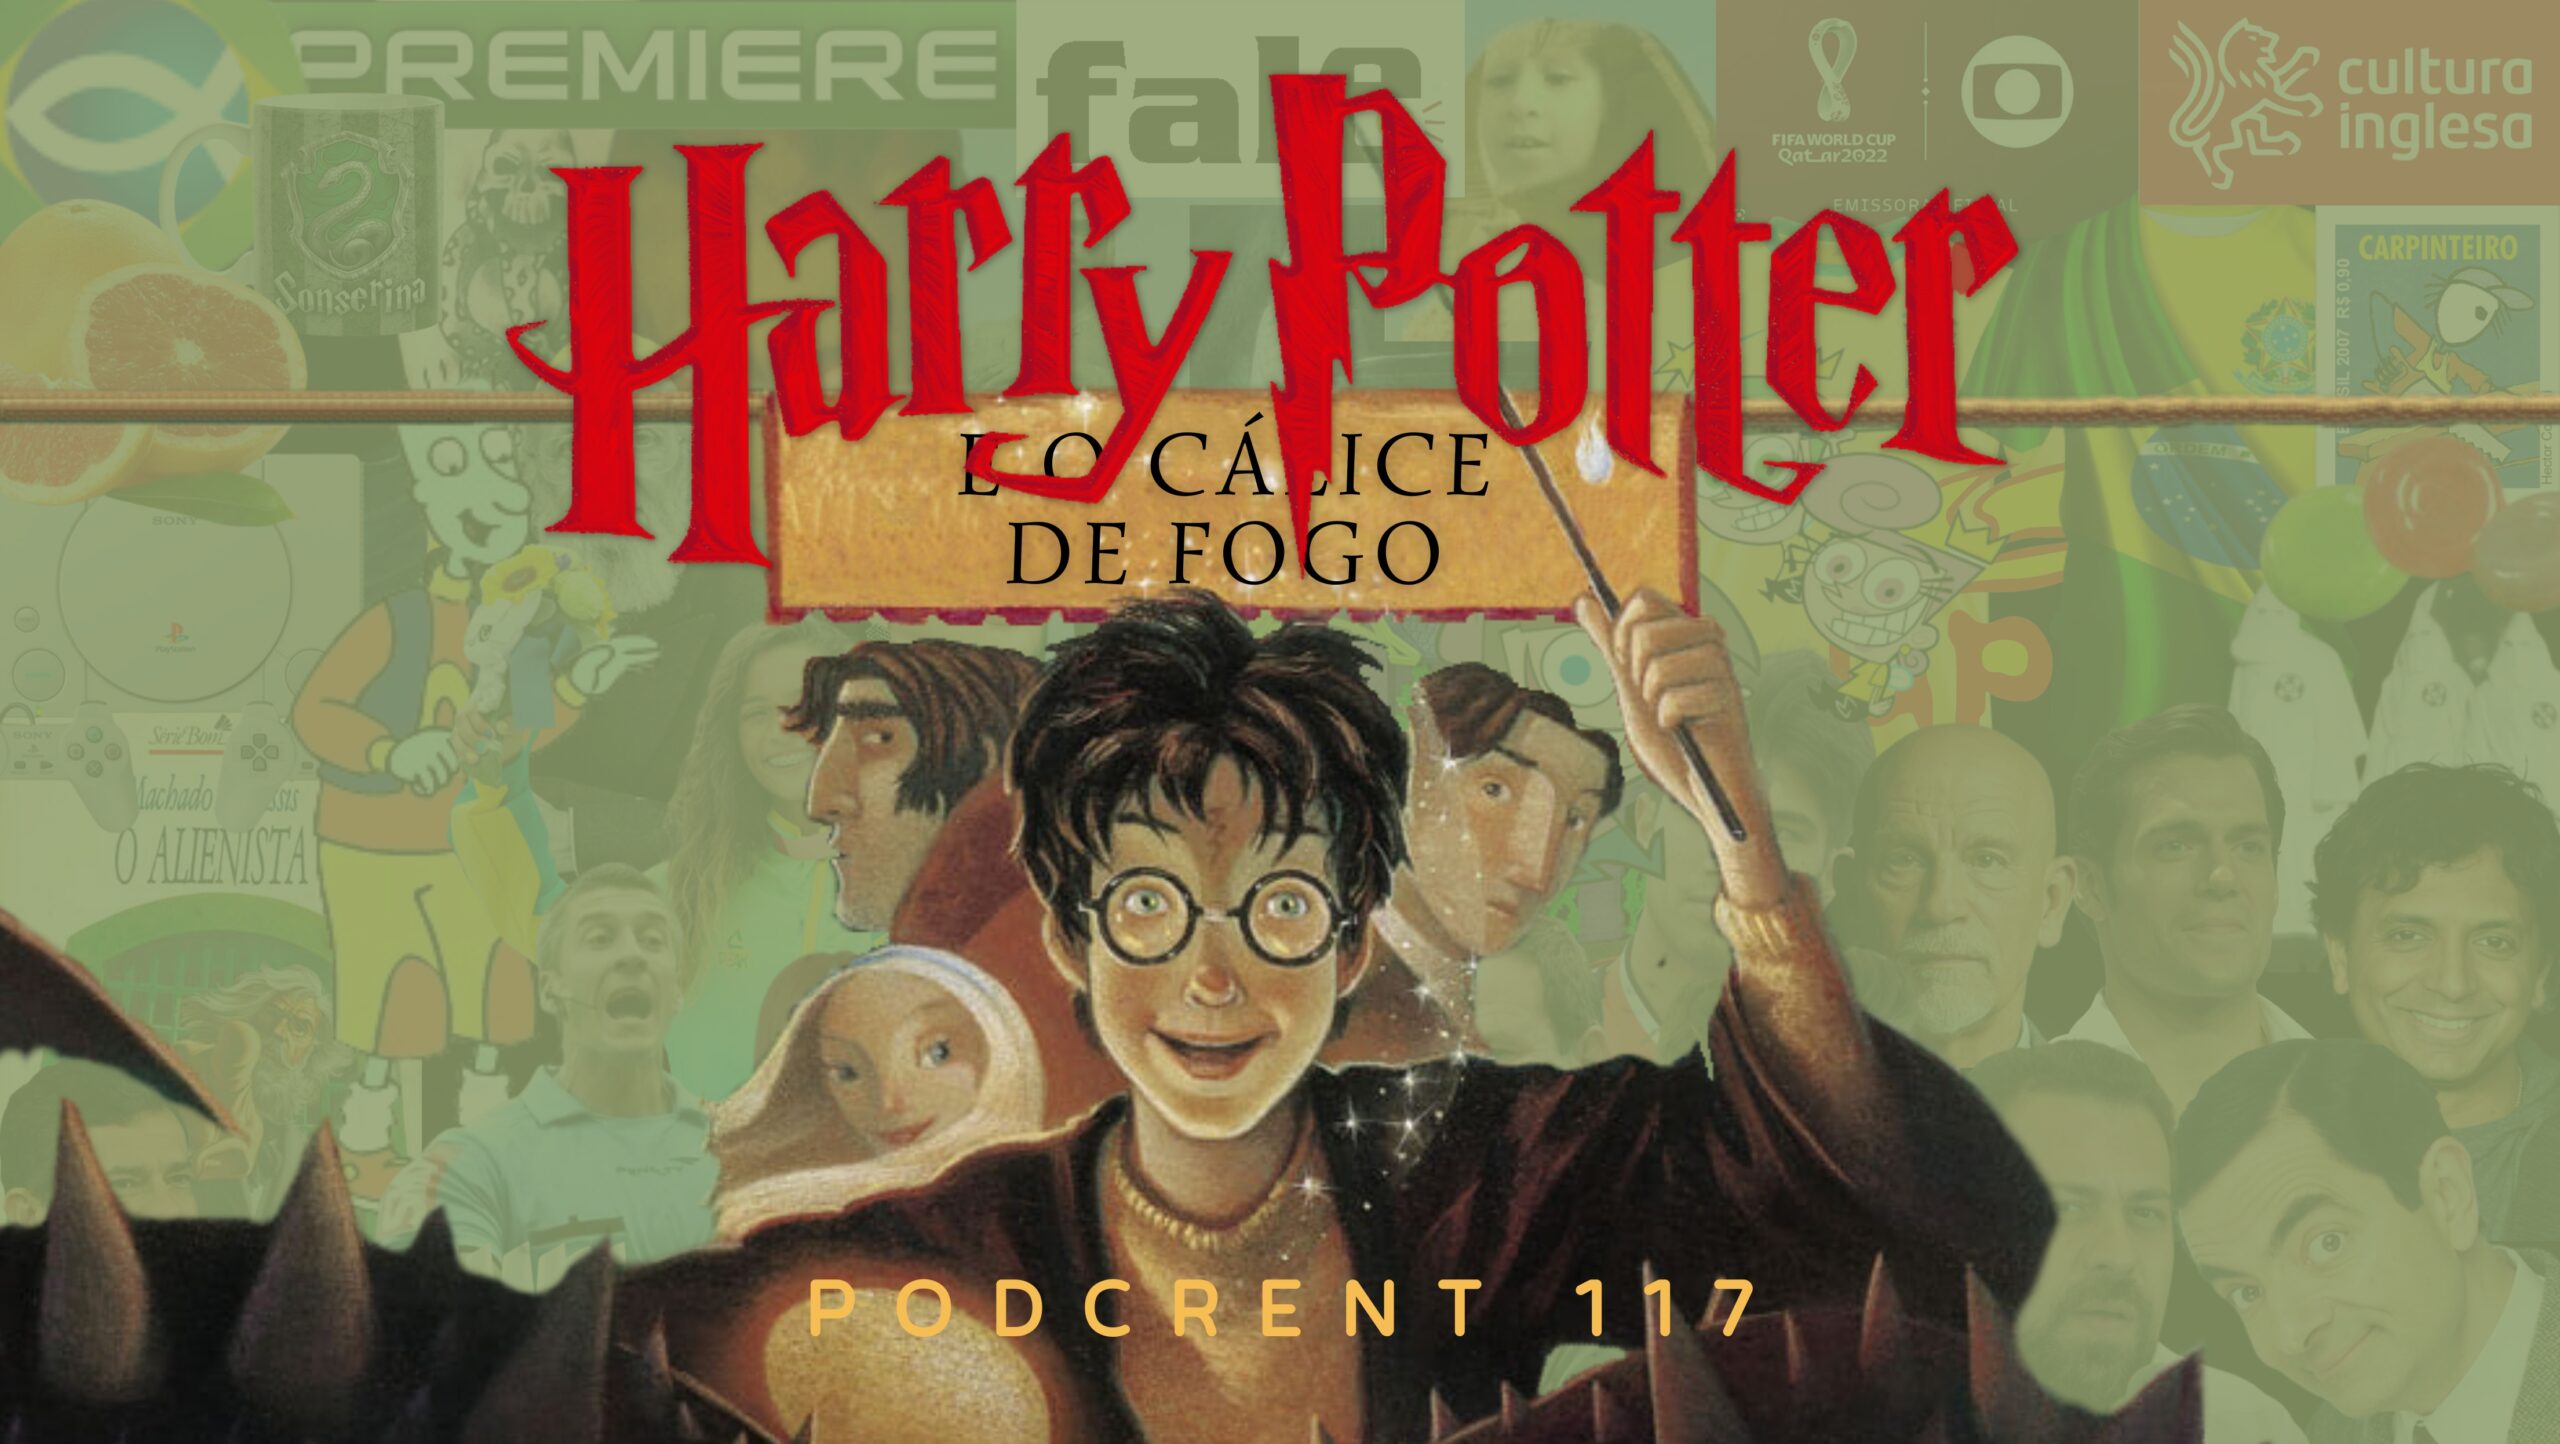 Harry Potter e o Cálice de Fogo  Podcrent 117 - Crentassos Produções  Subversivas